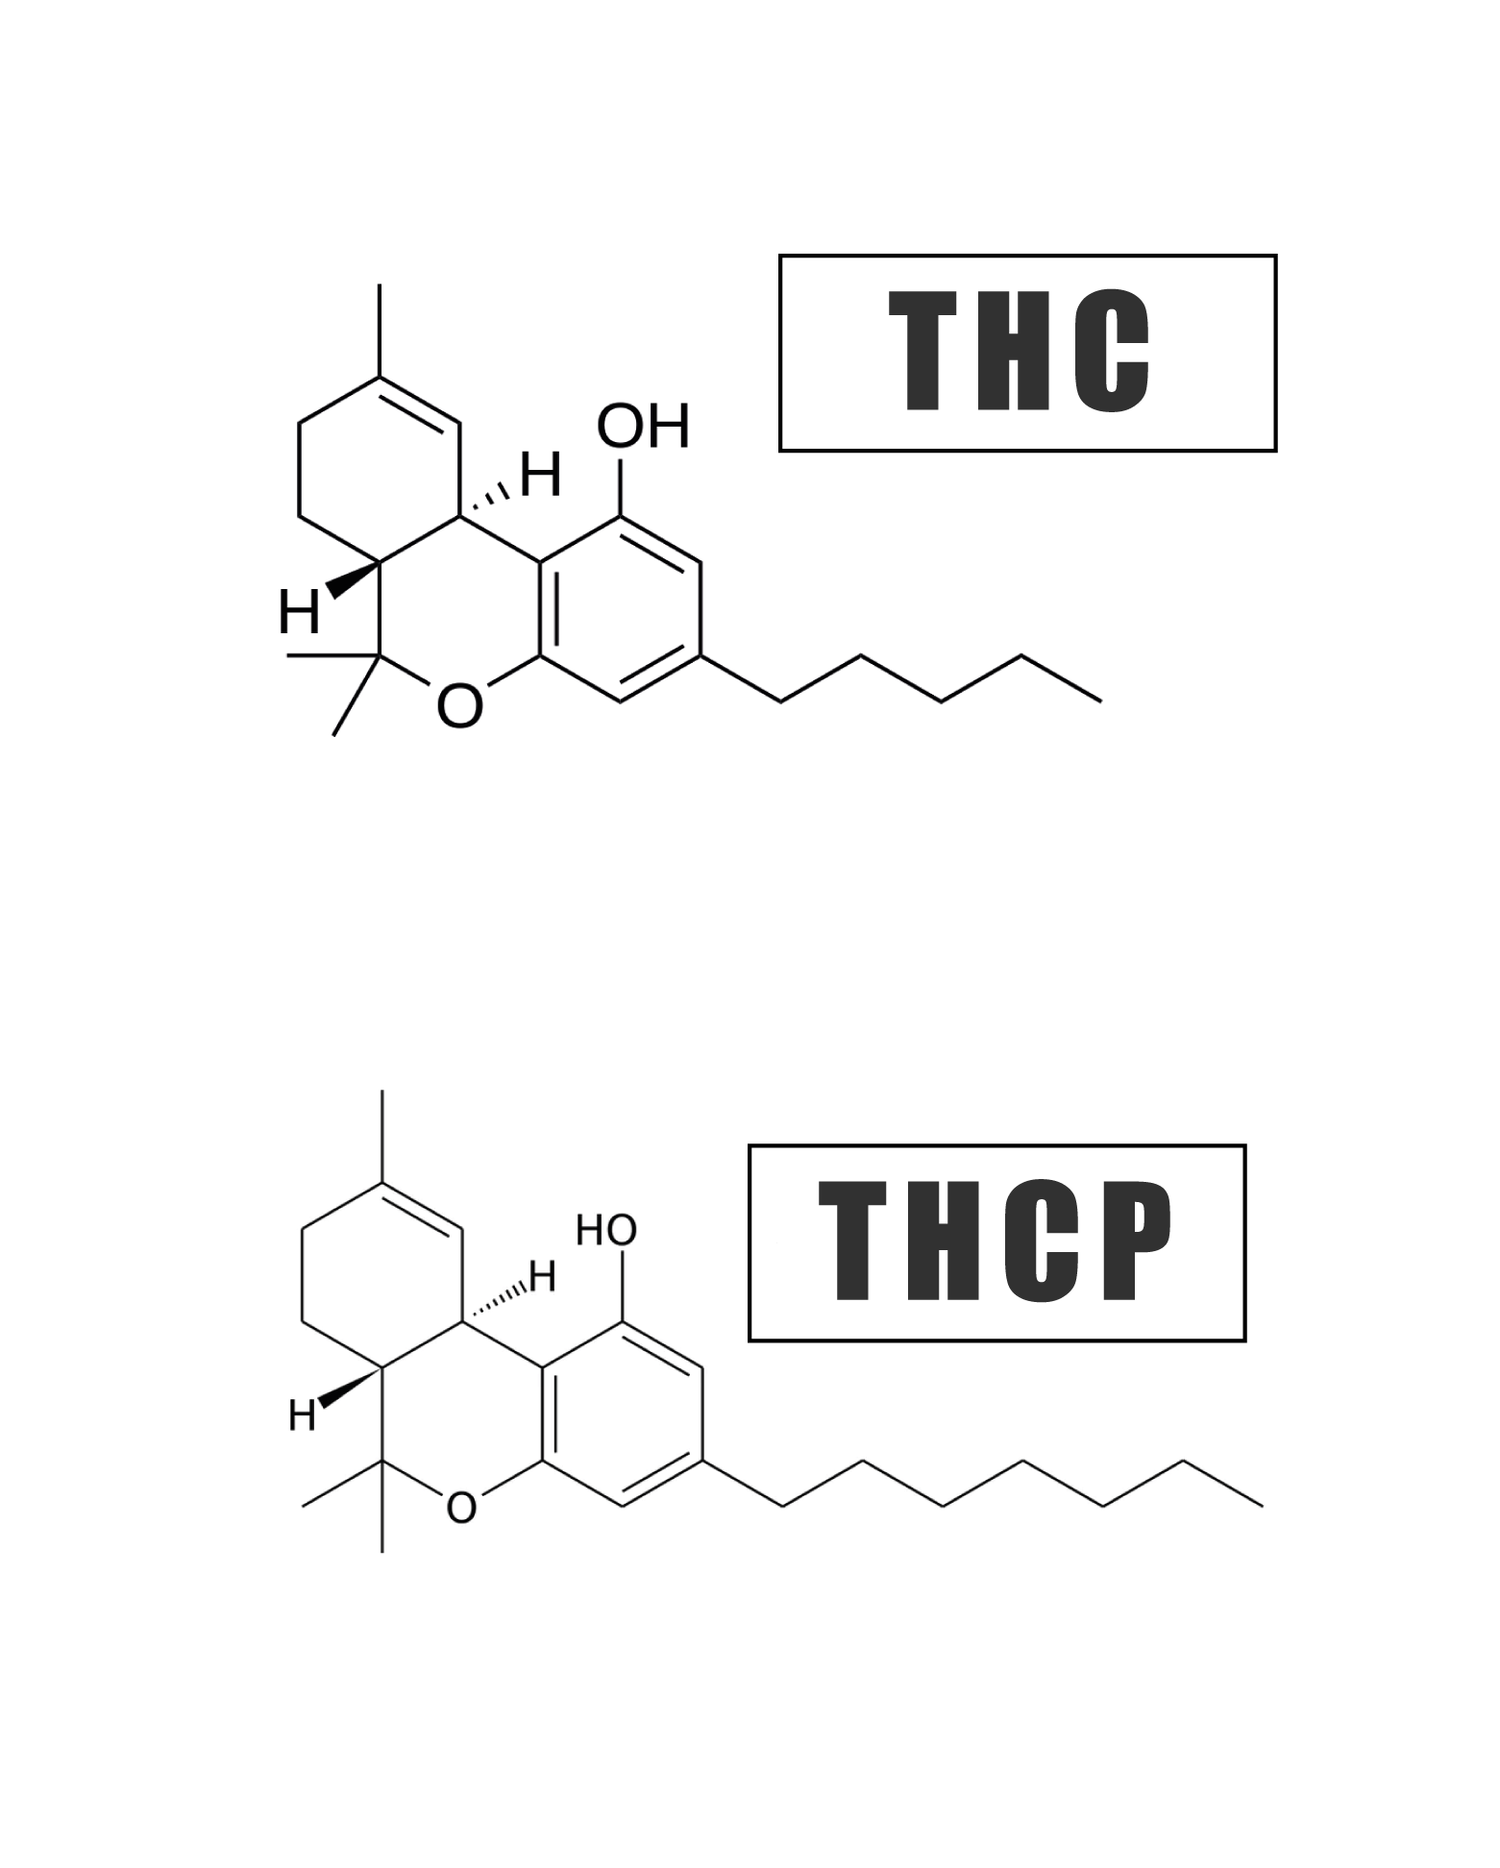 infographie illustrant la différence chimique entre le THC et le THCP